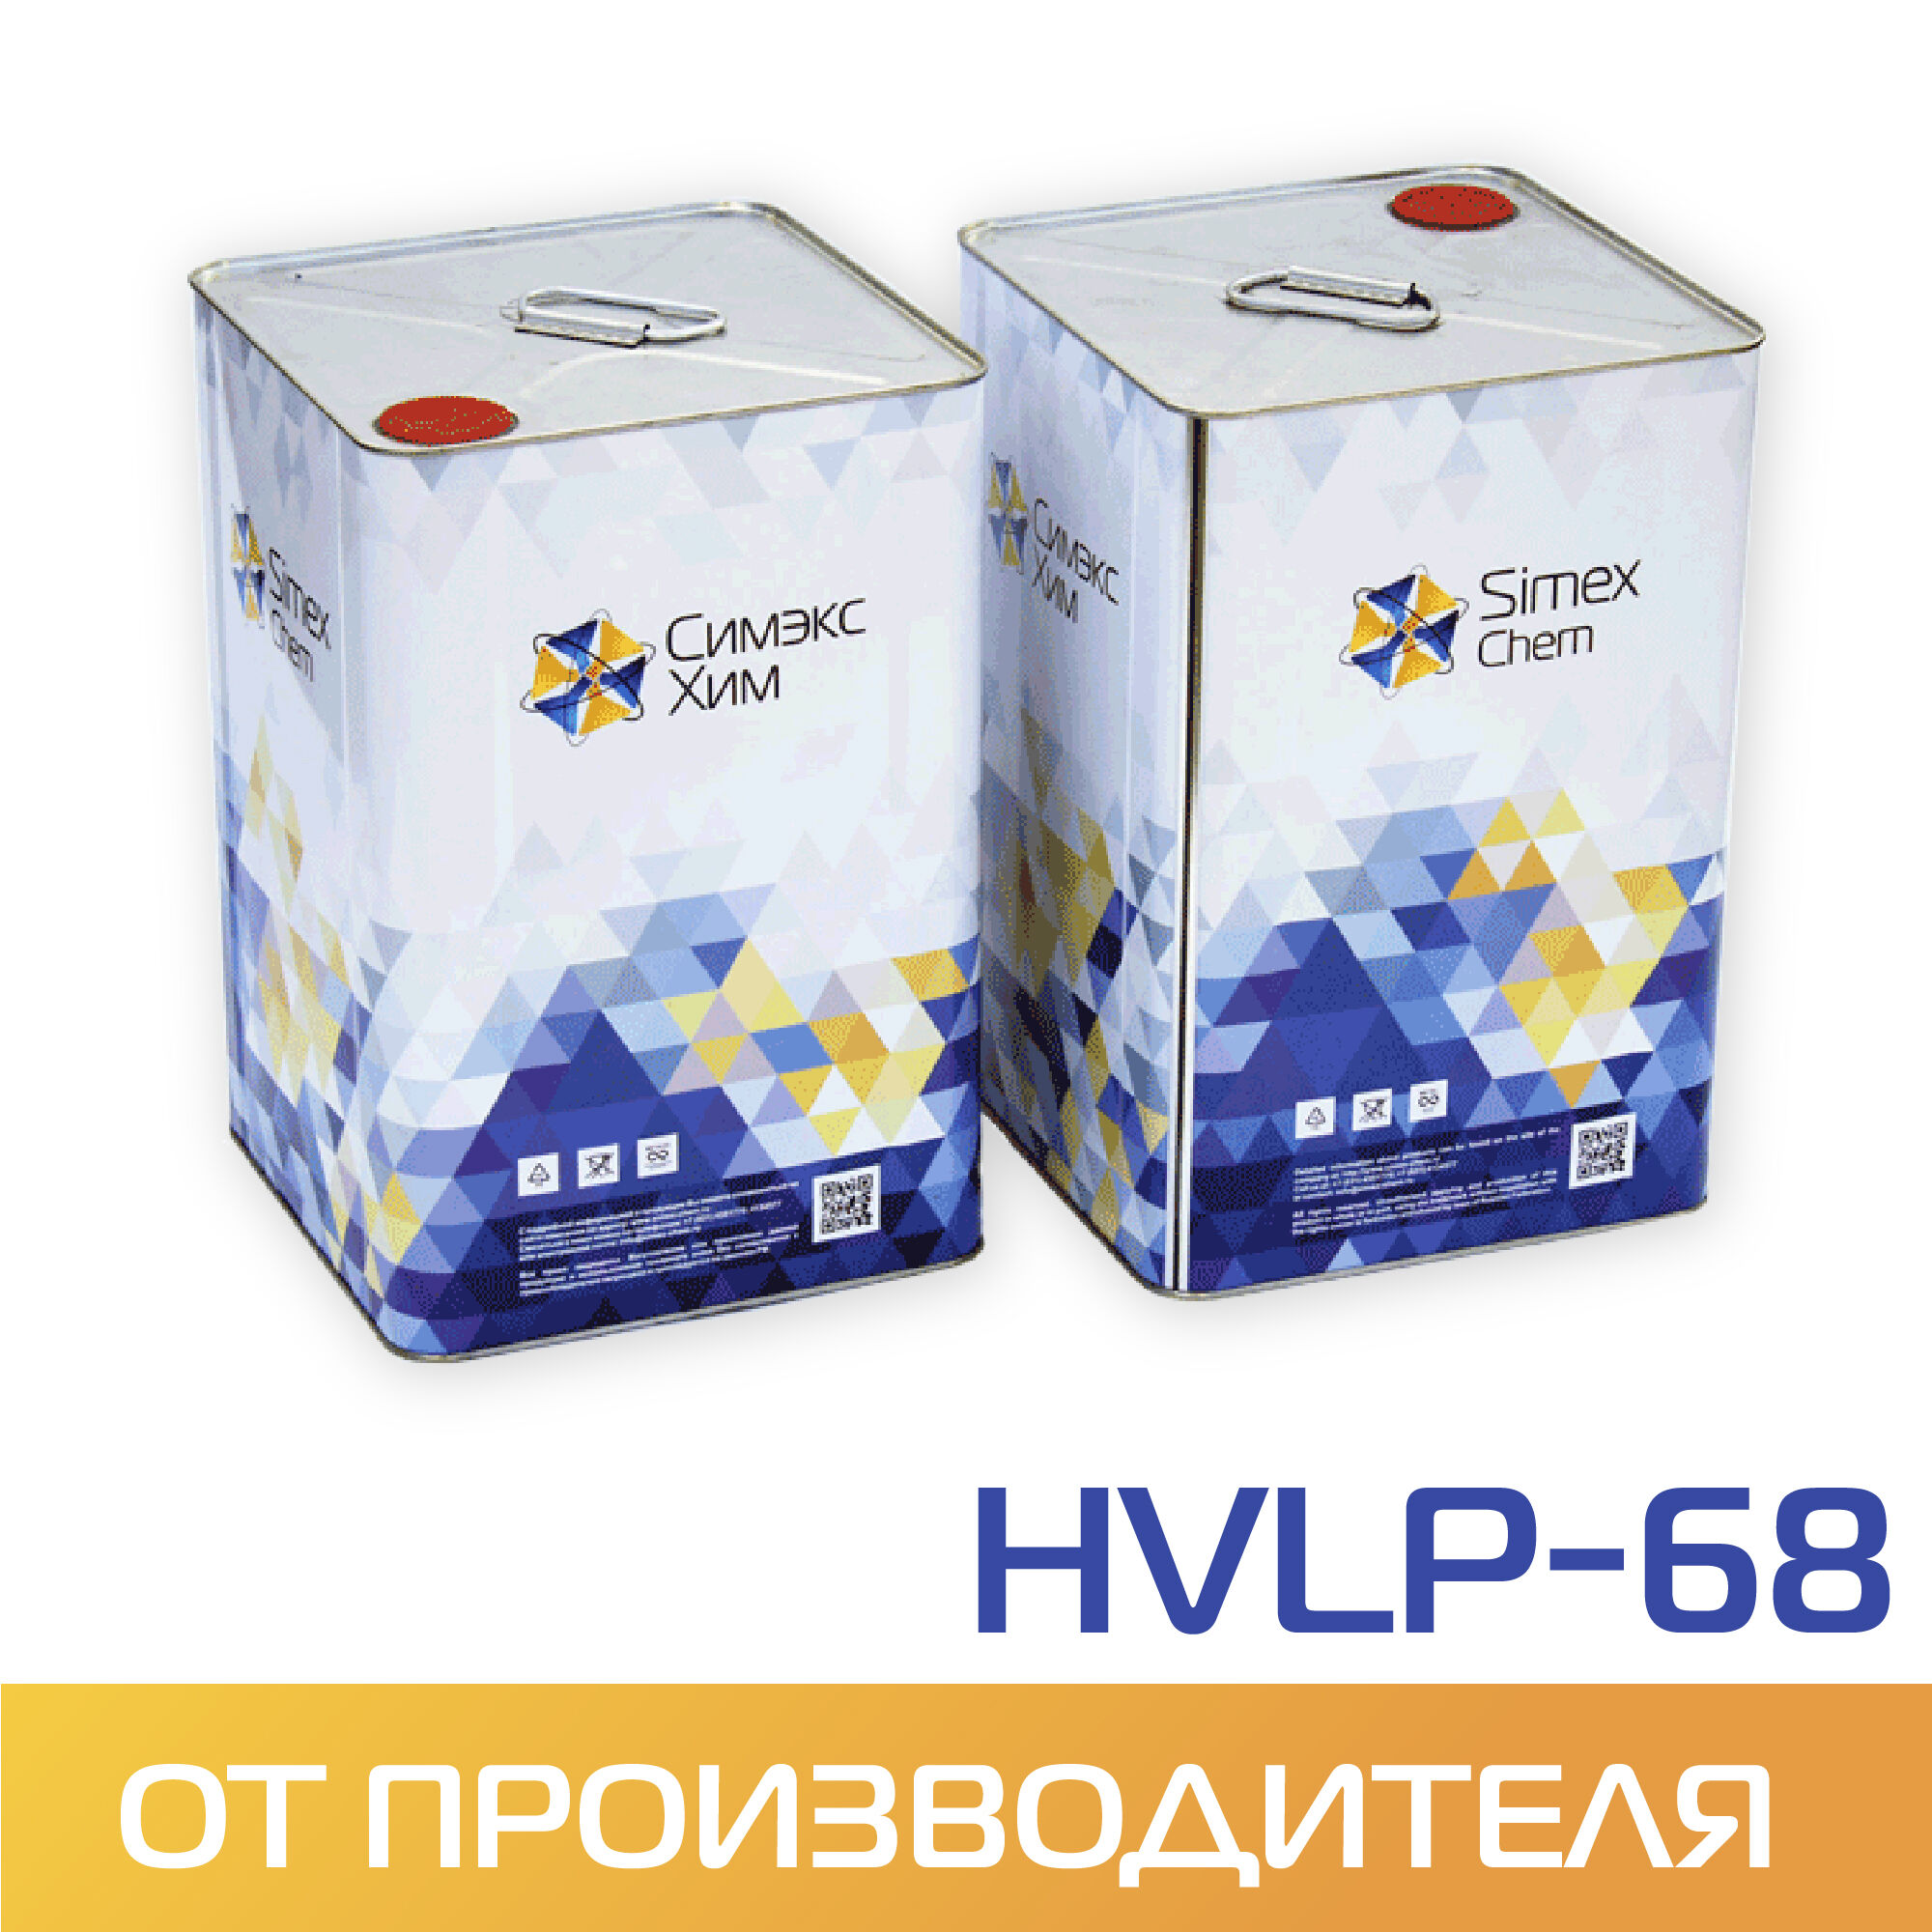 Масло гидравлическое HVLP-68 бочка 15 кг